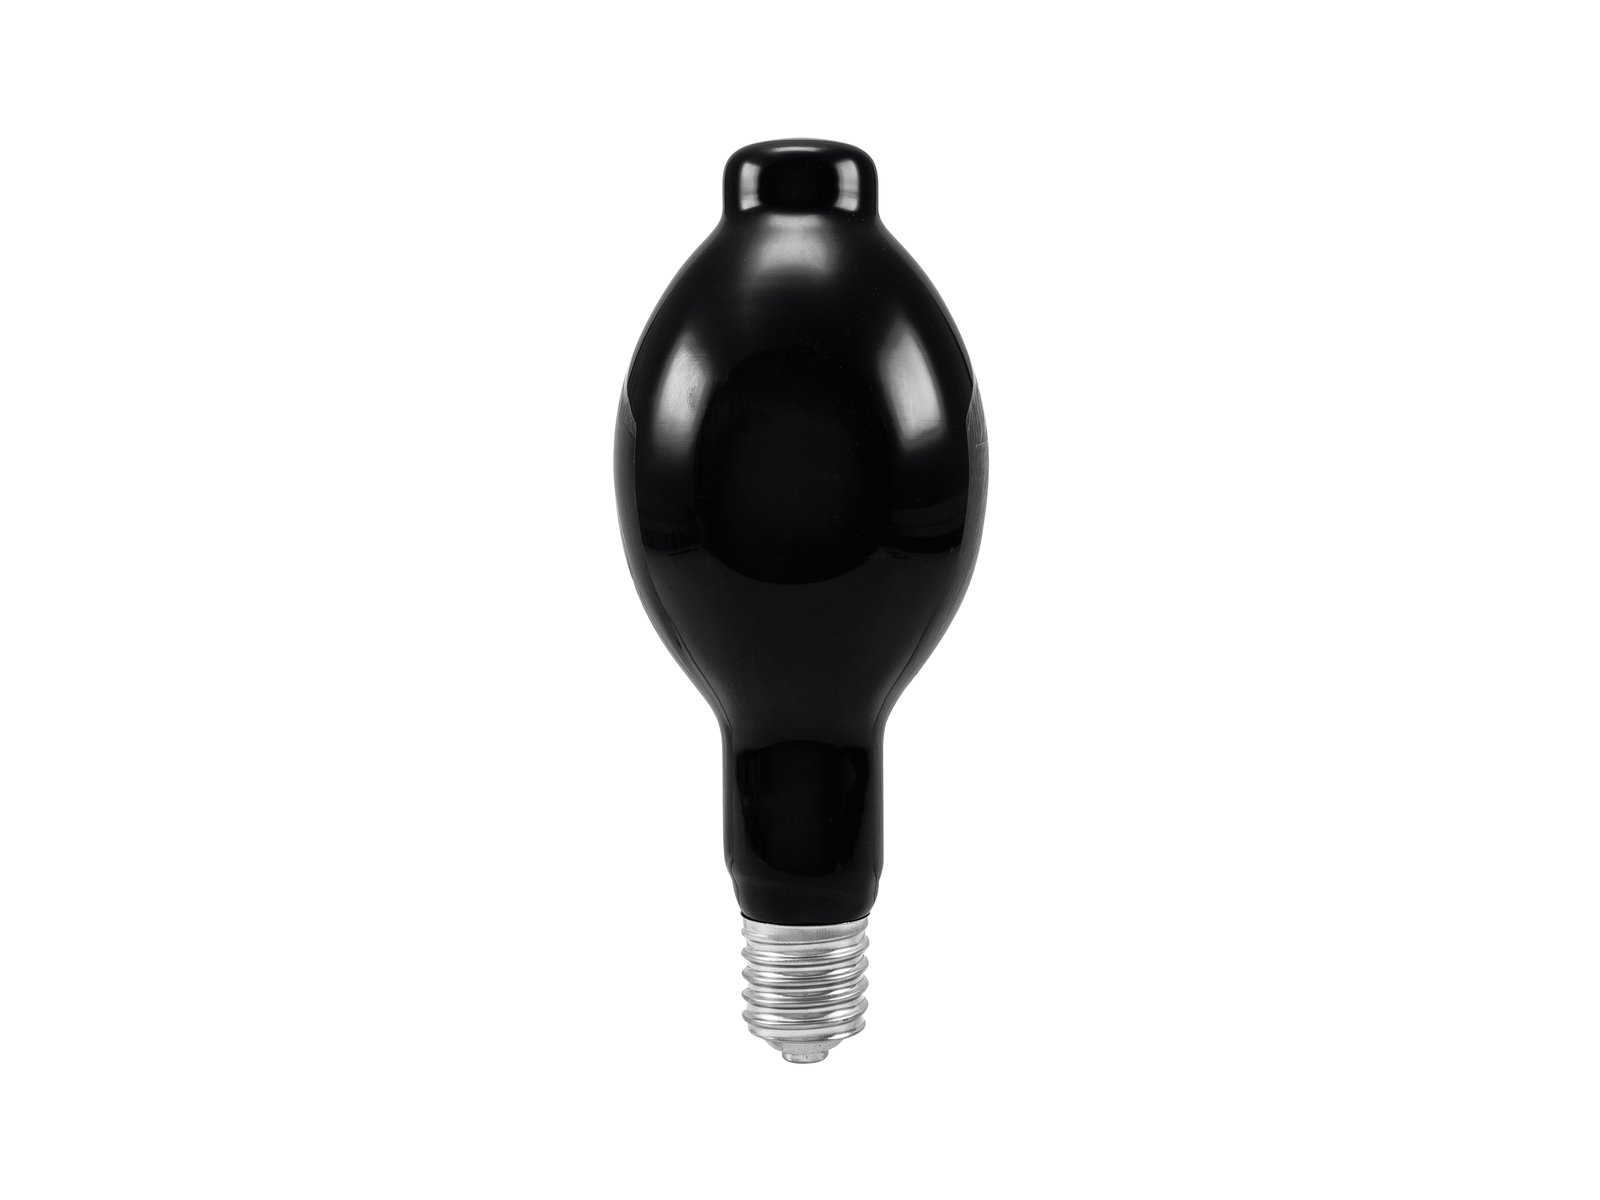 OMNILUX UV Lamp 400W E-40